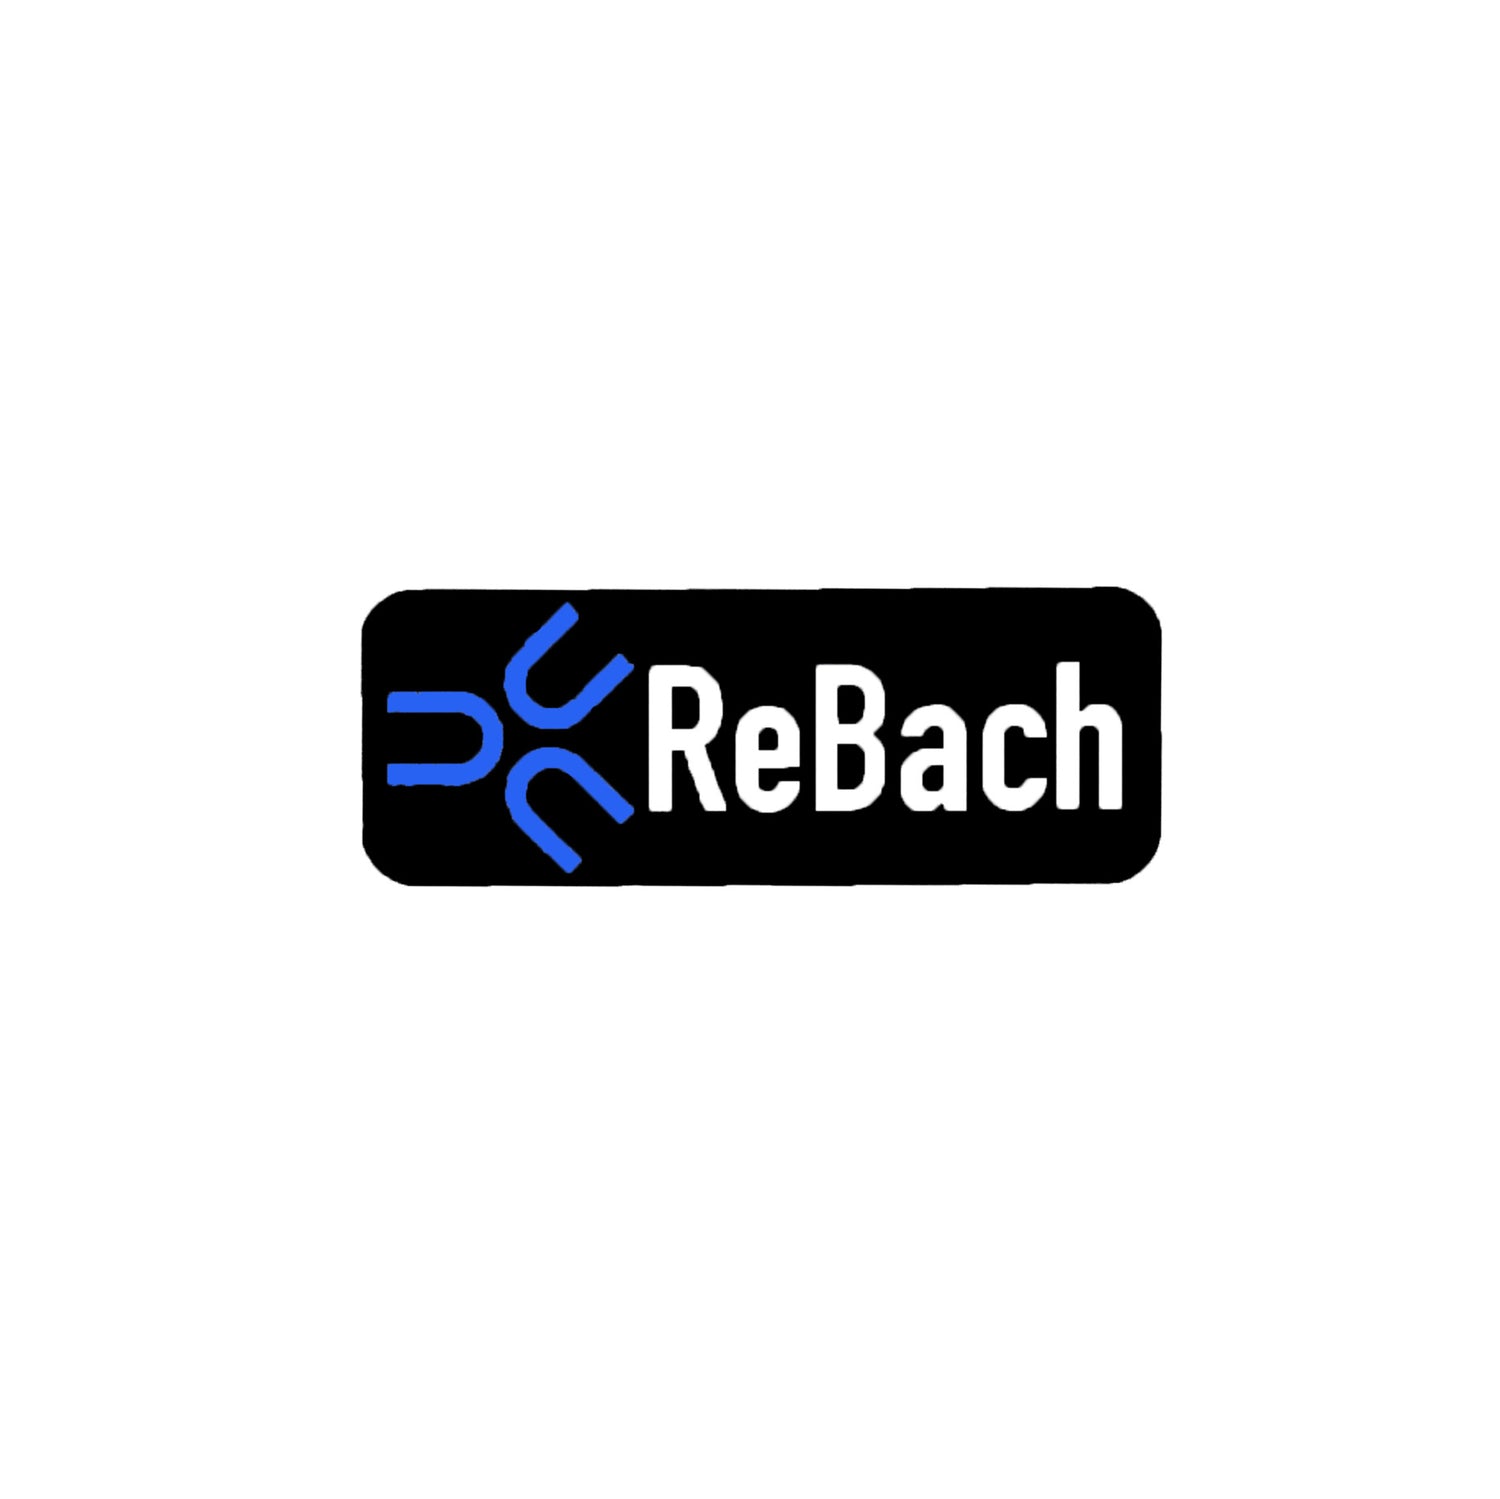 ReBach